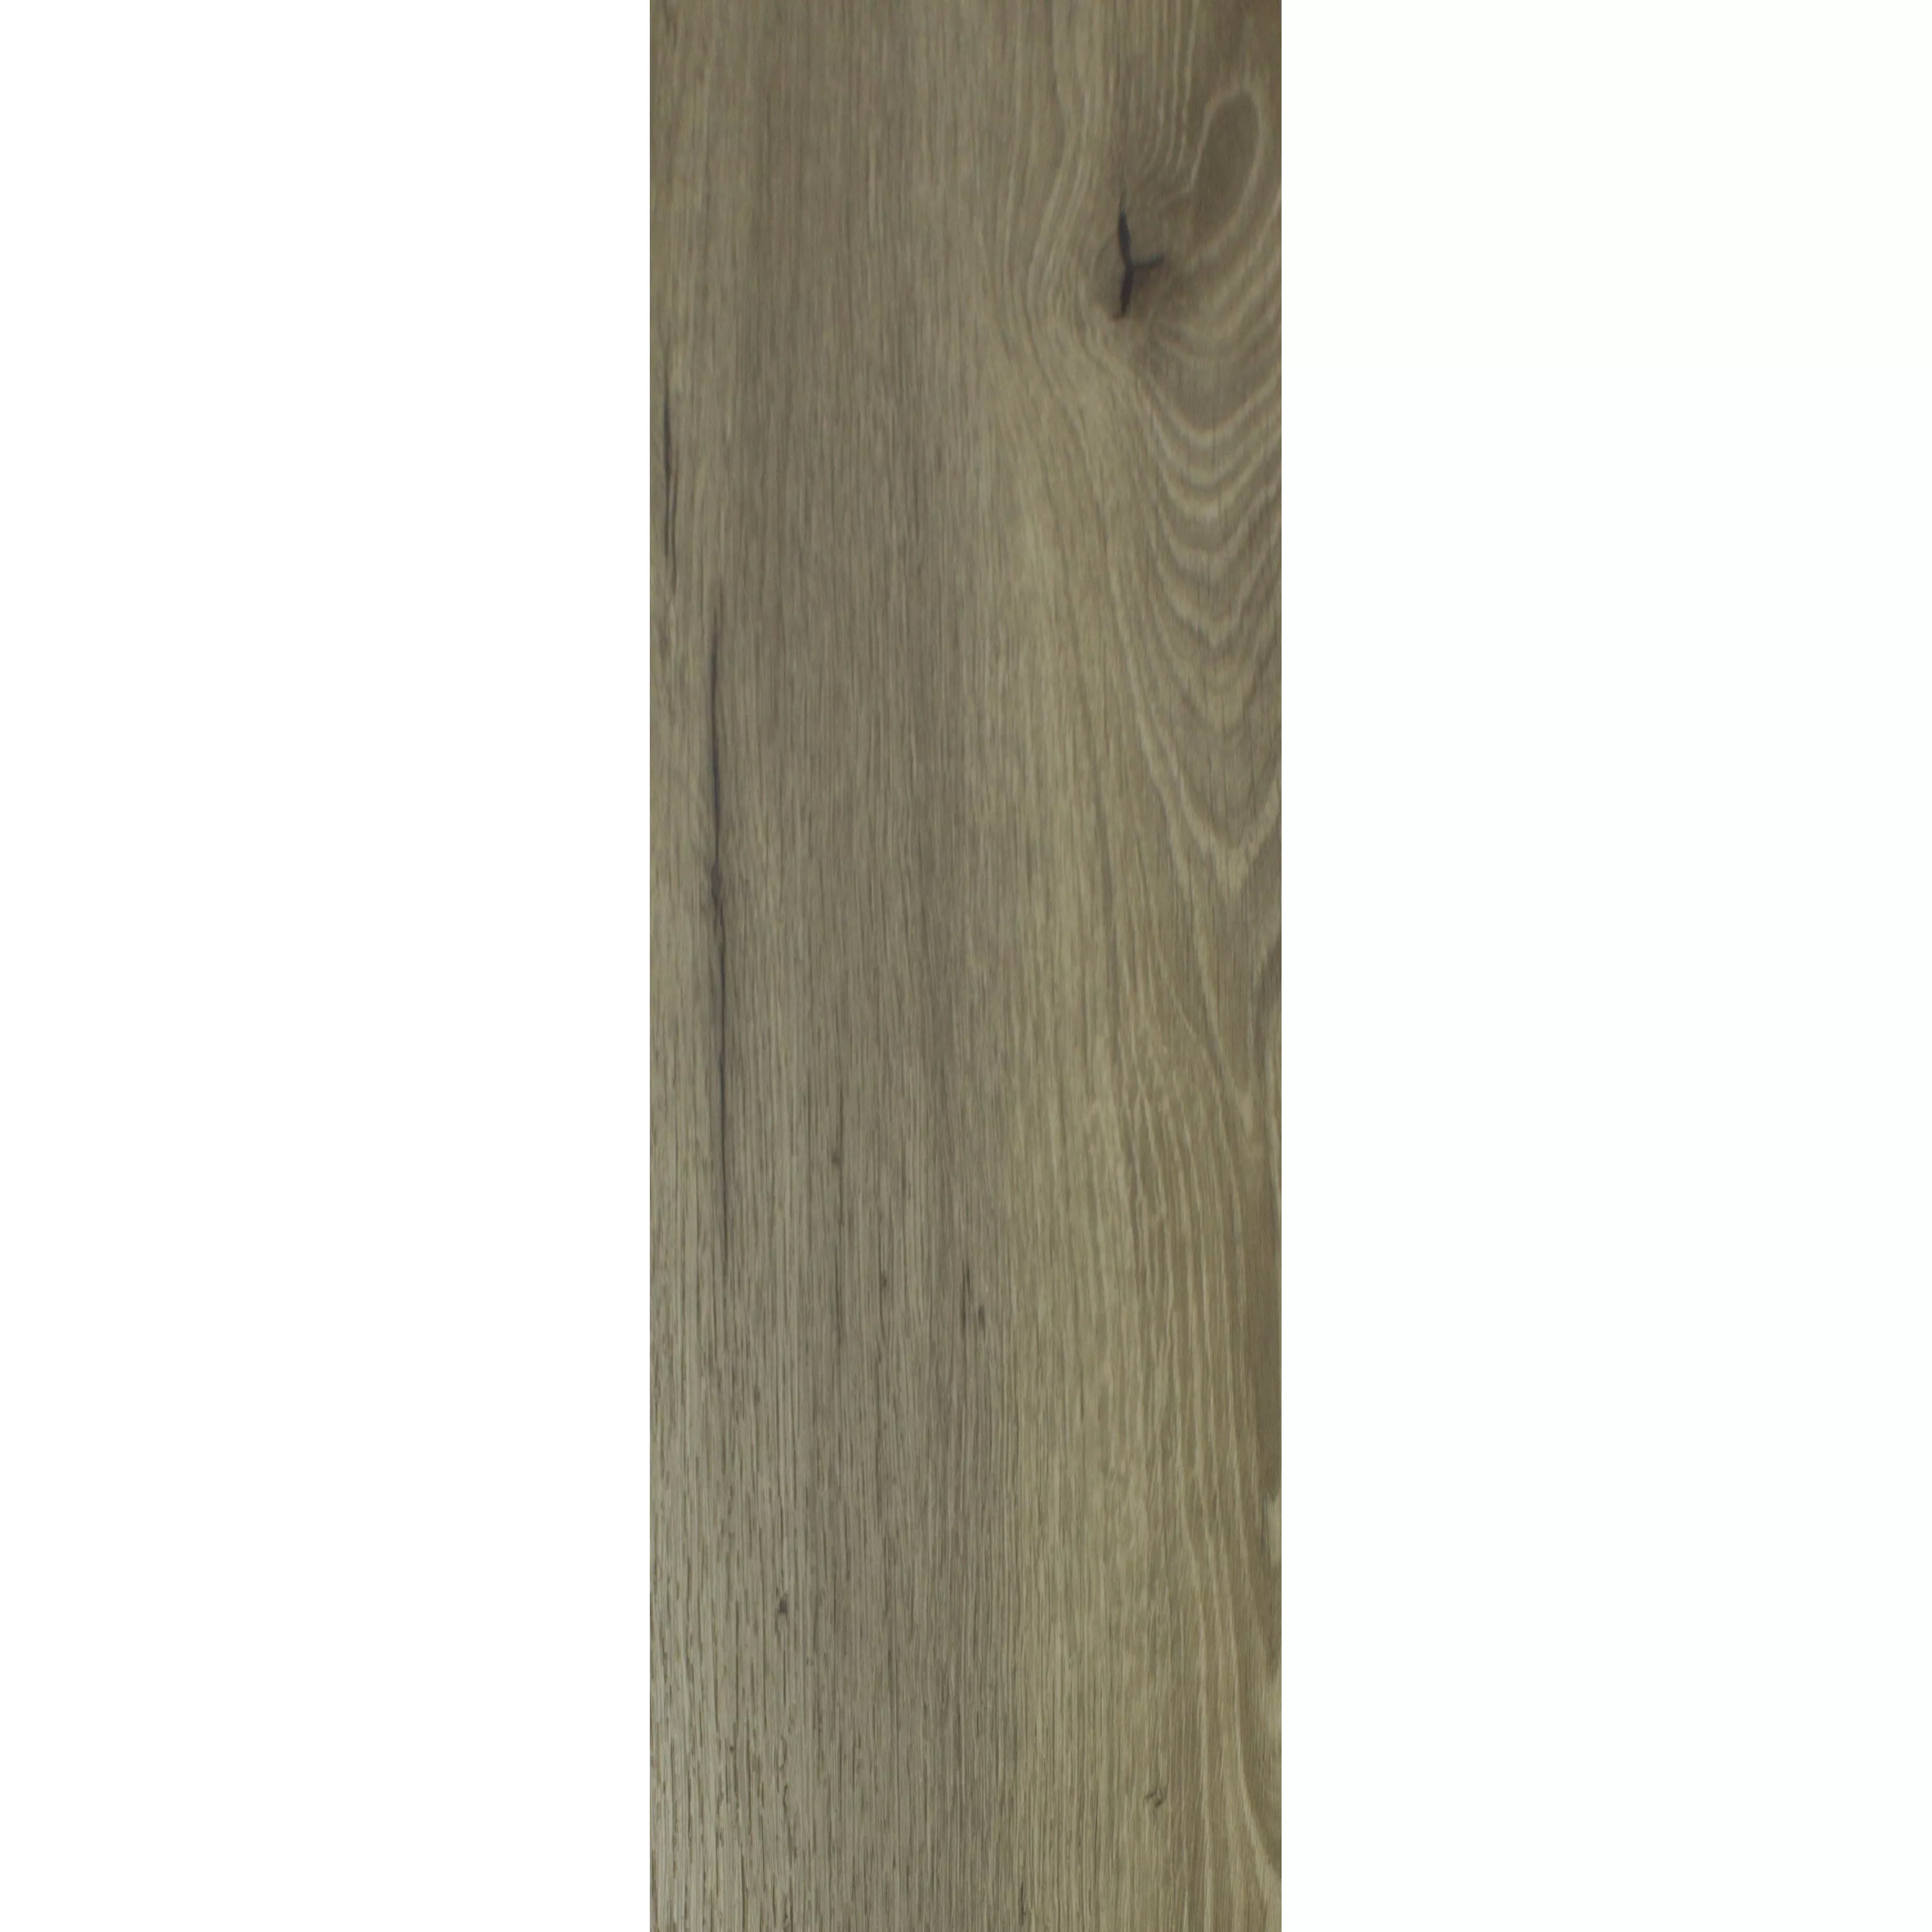 Płytki podłogowe winylowe Klejwinylowy Newcastle 23,2x122,7cm Brązowy